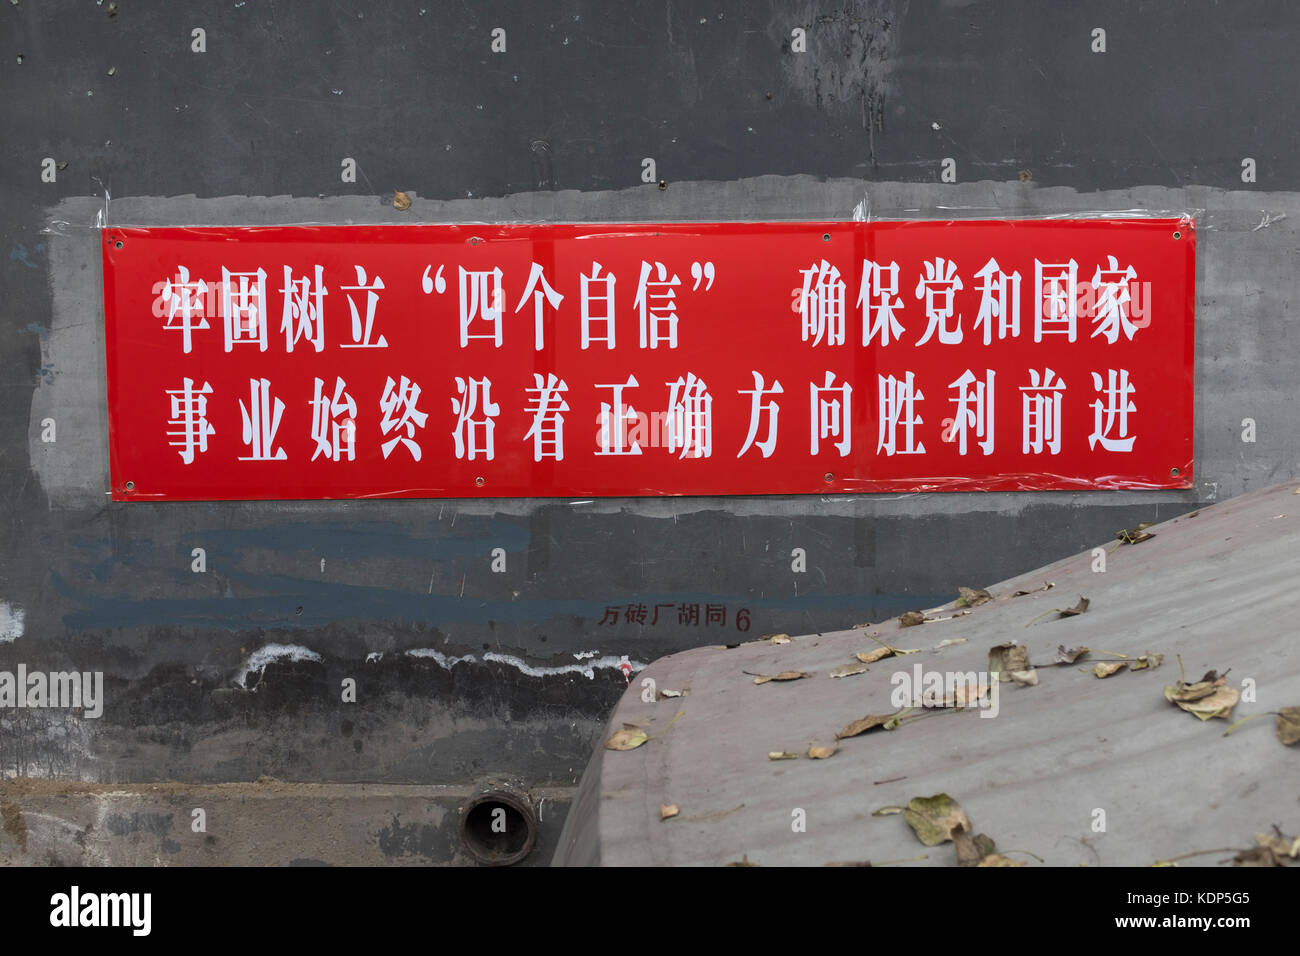 Un slogan policical pour le 19e congrès du Parti à Pékin, en Chine. Banque D'Images